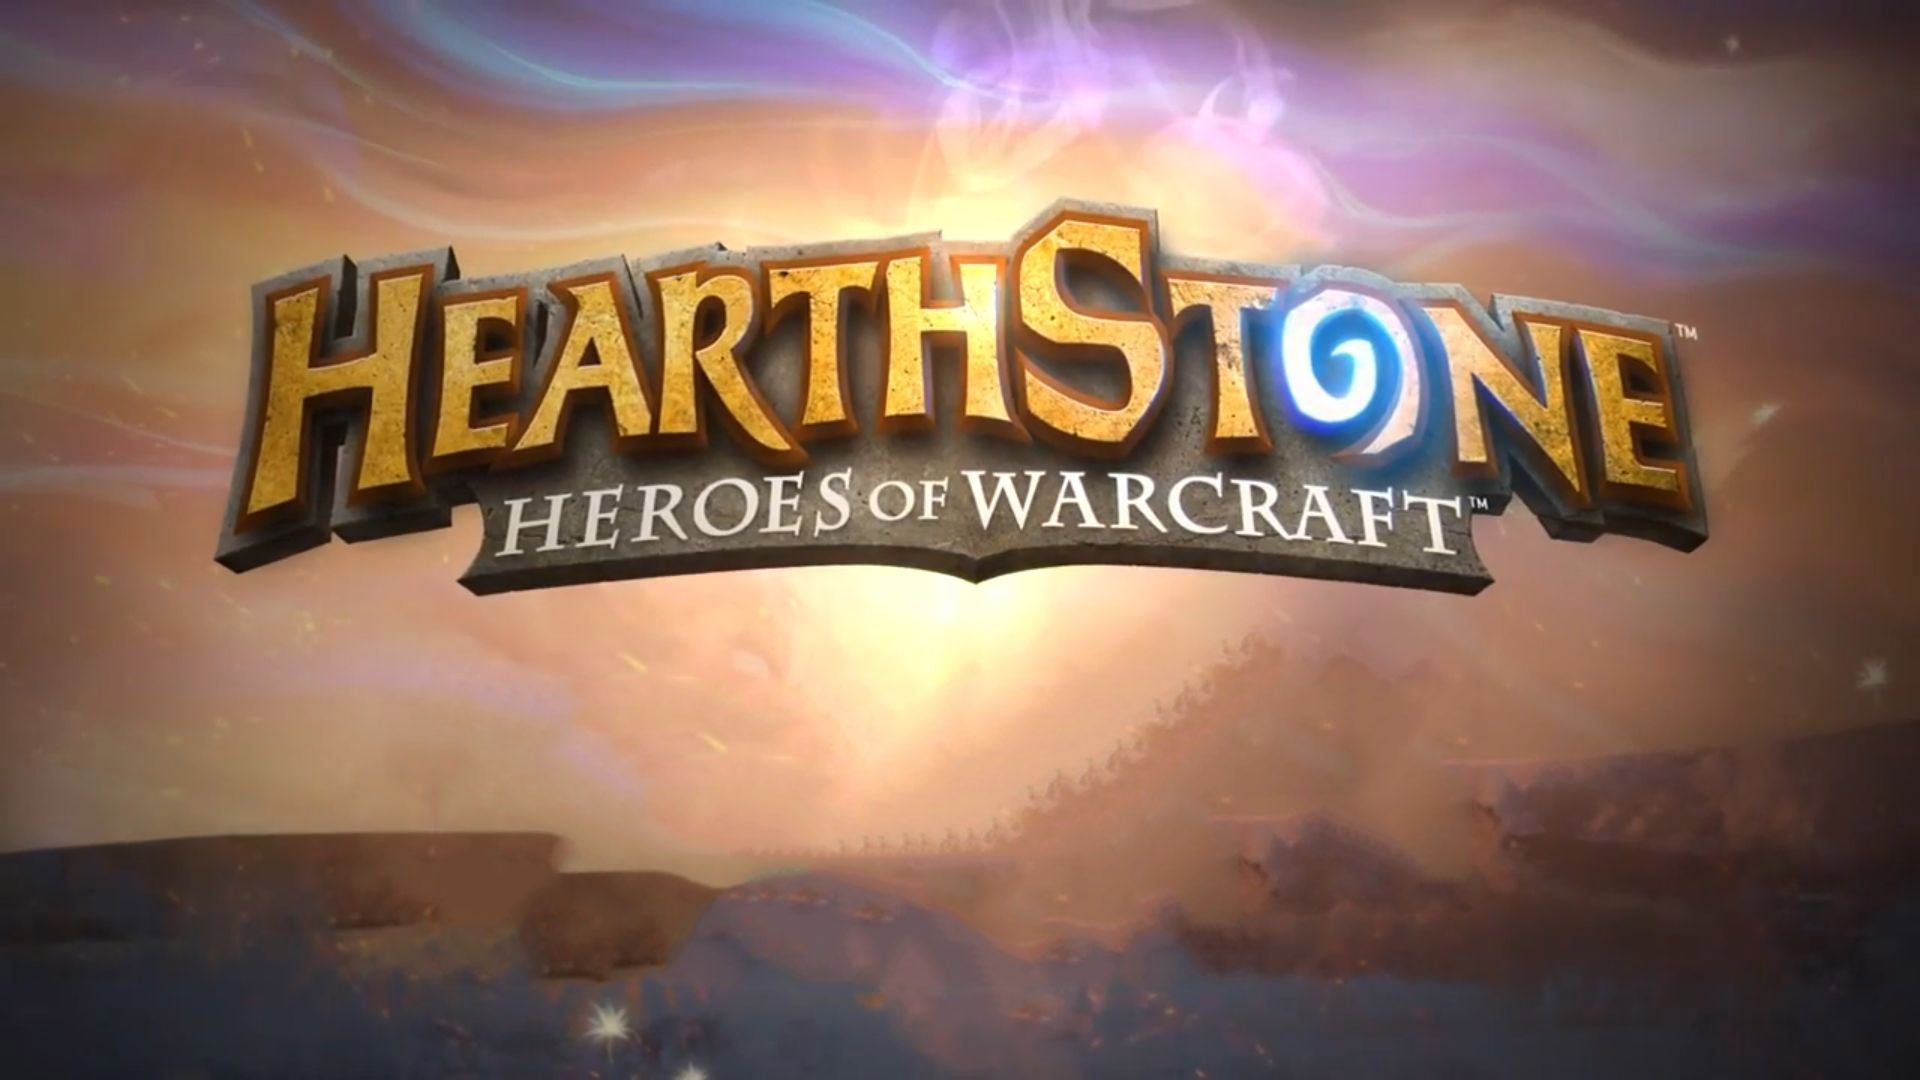 Heroes Of Warcraft Widescreen For Desktop - Neon Sign - HD Wallpaper 